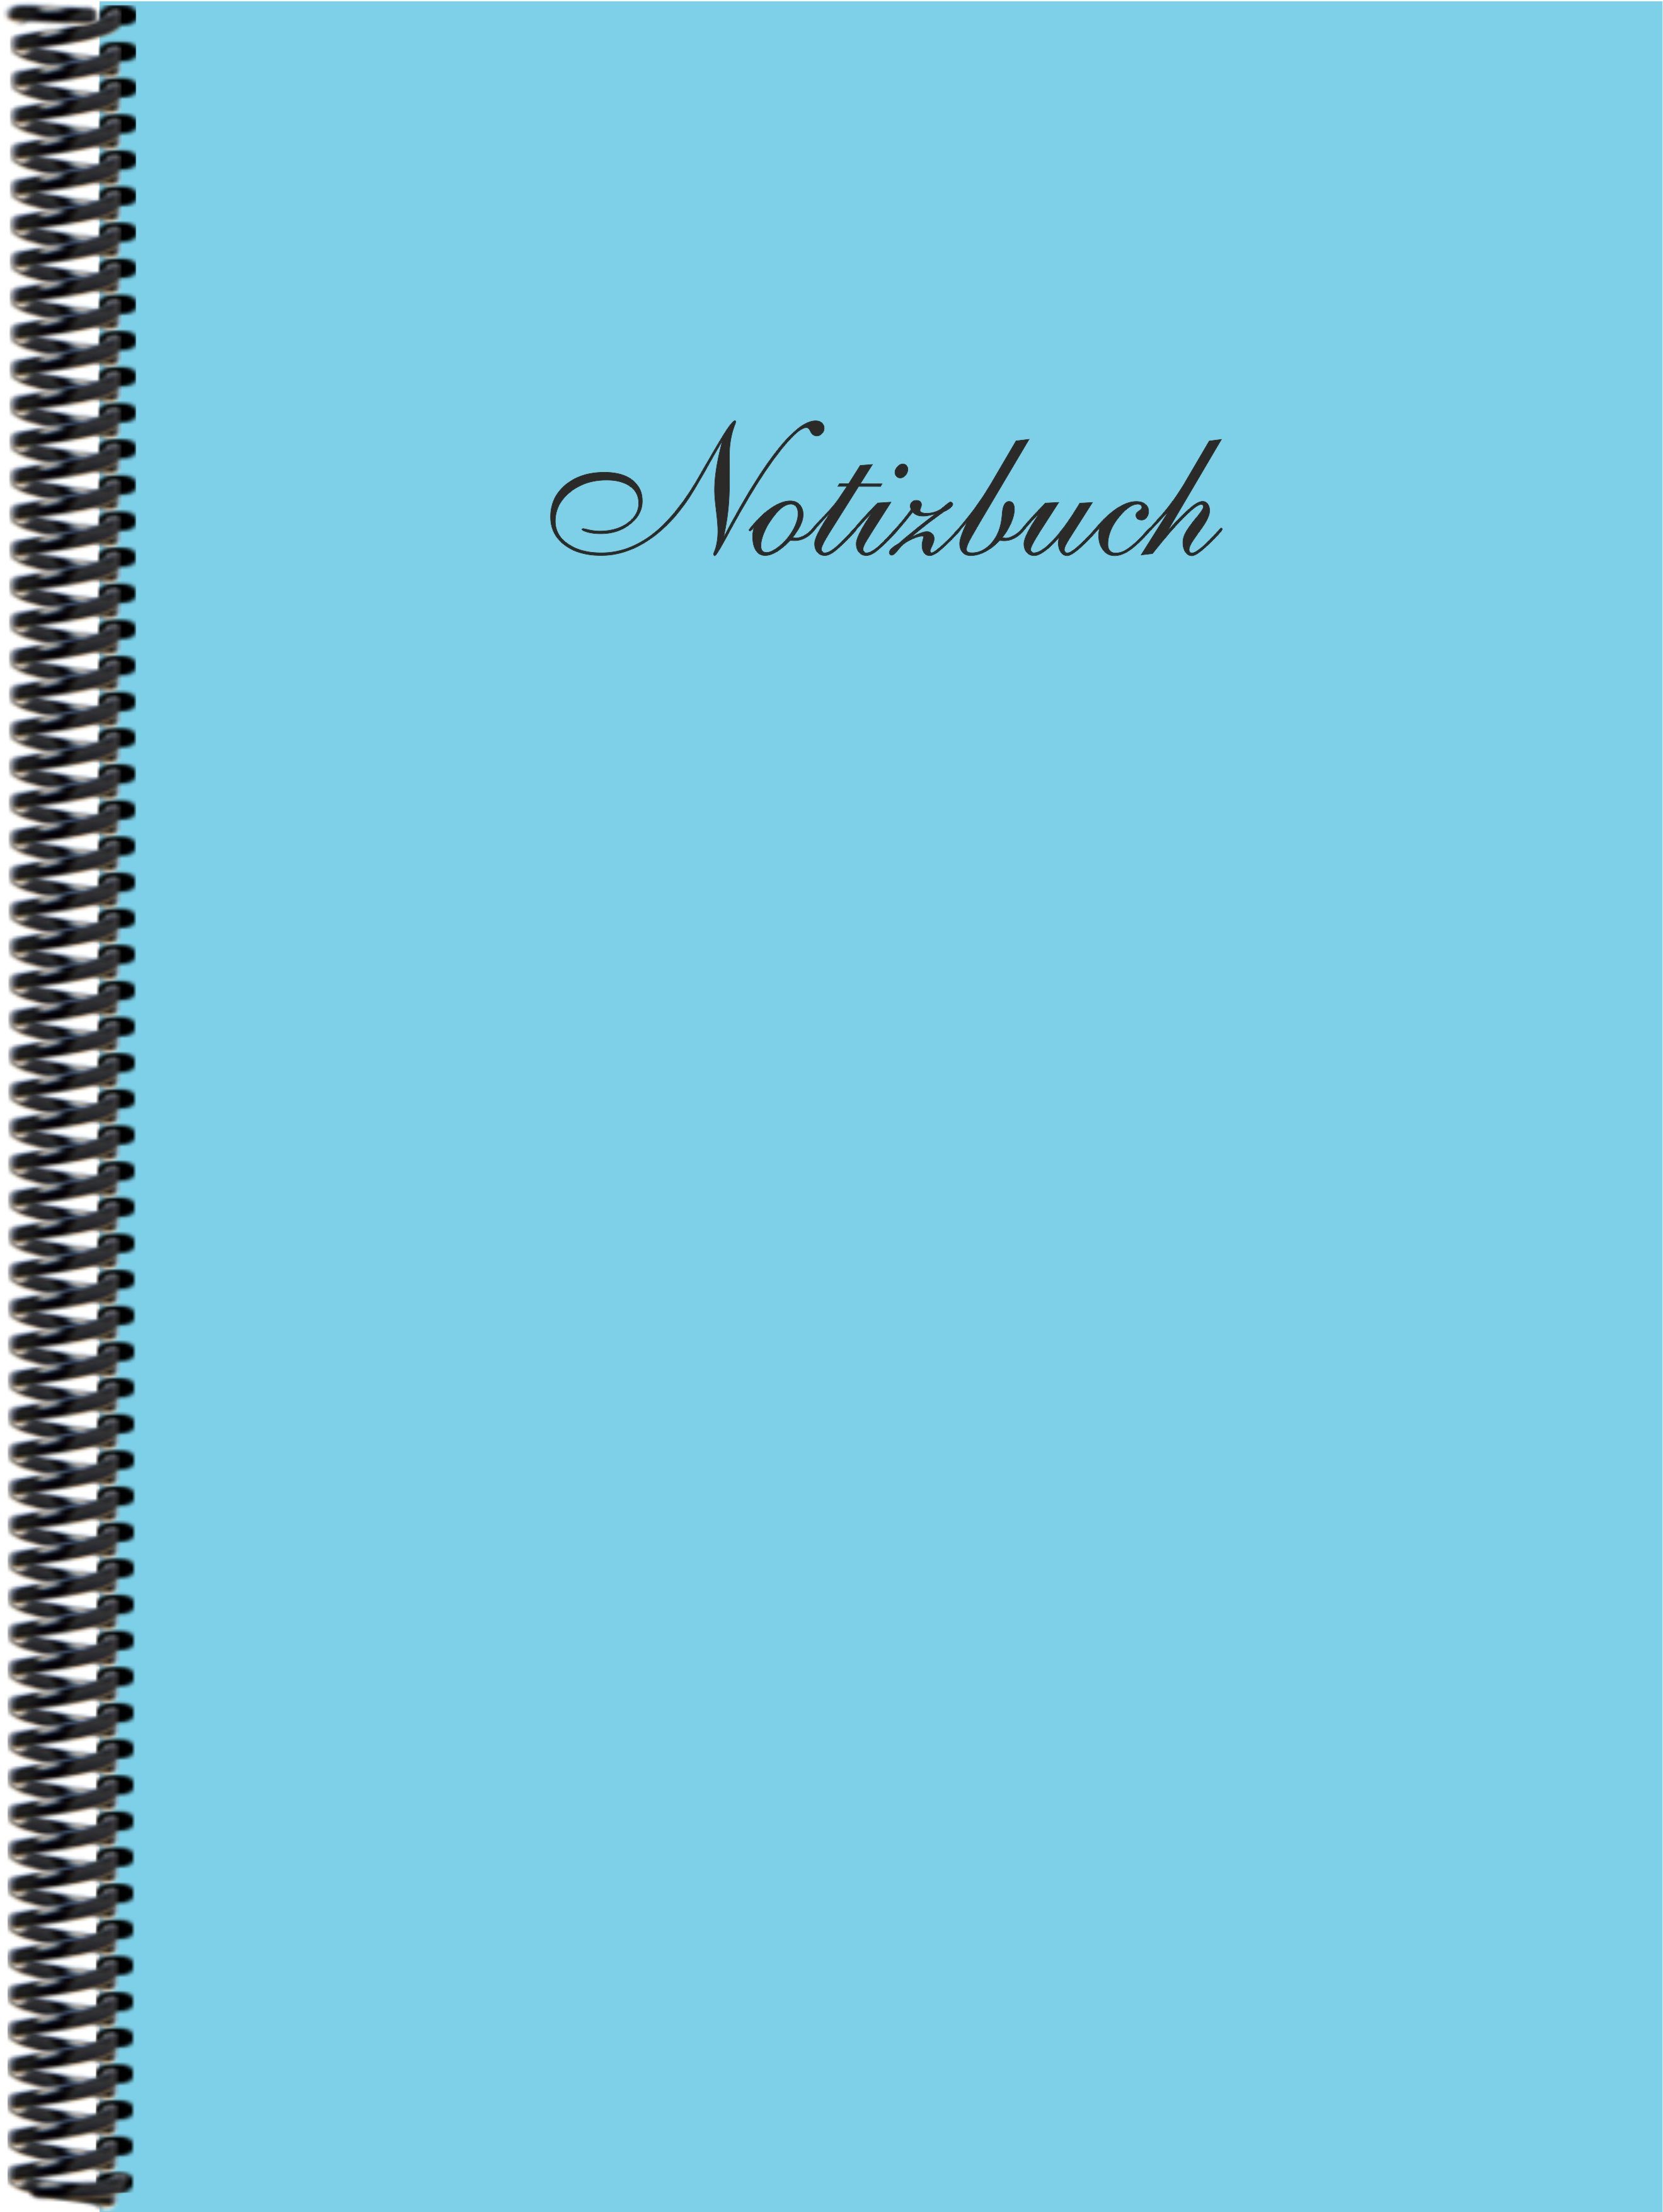 der DINA4 Gmbh Verlag Notizbuch E&Z in Notizbuch Trendfarbe himmelblau liniert,